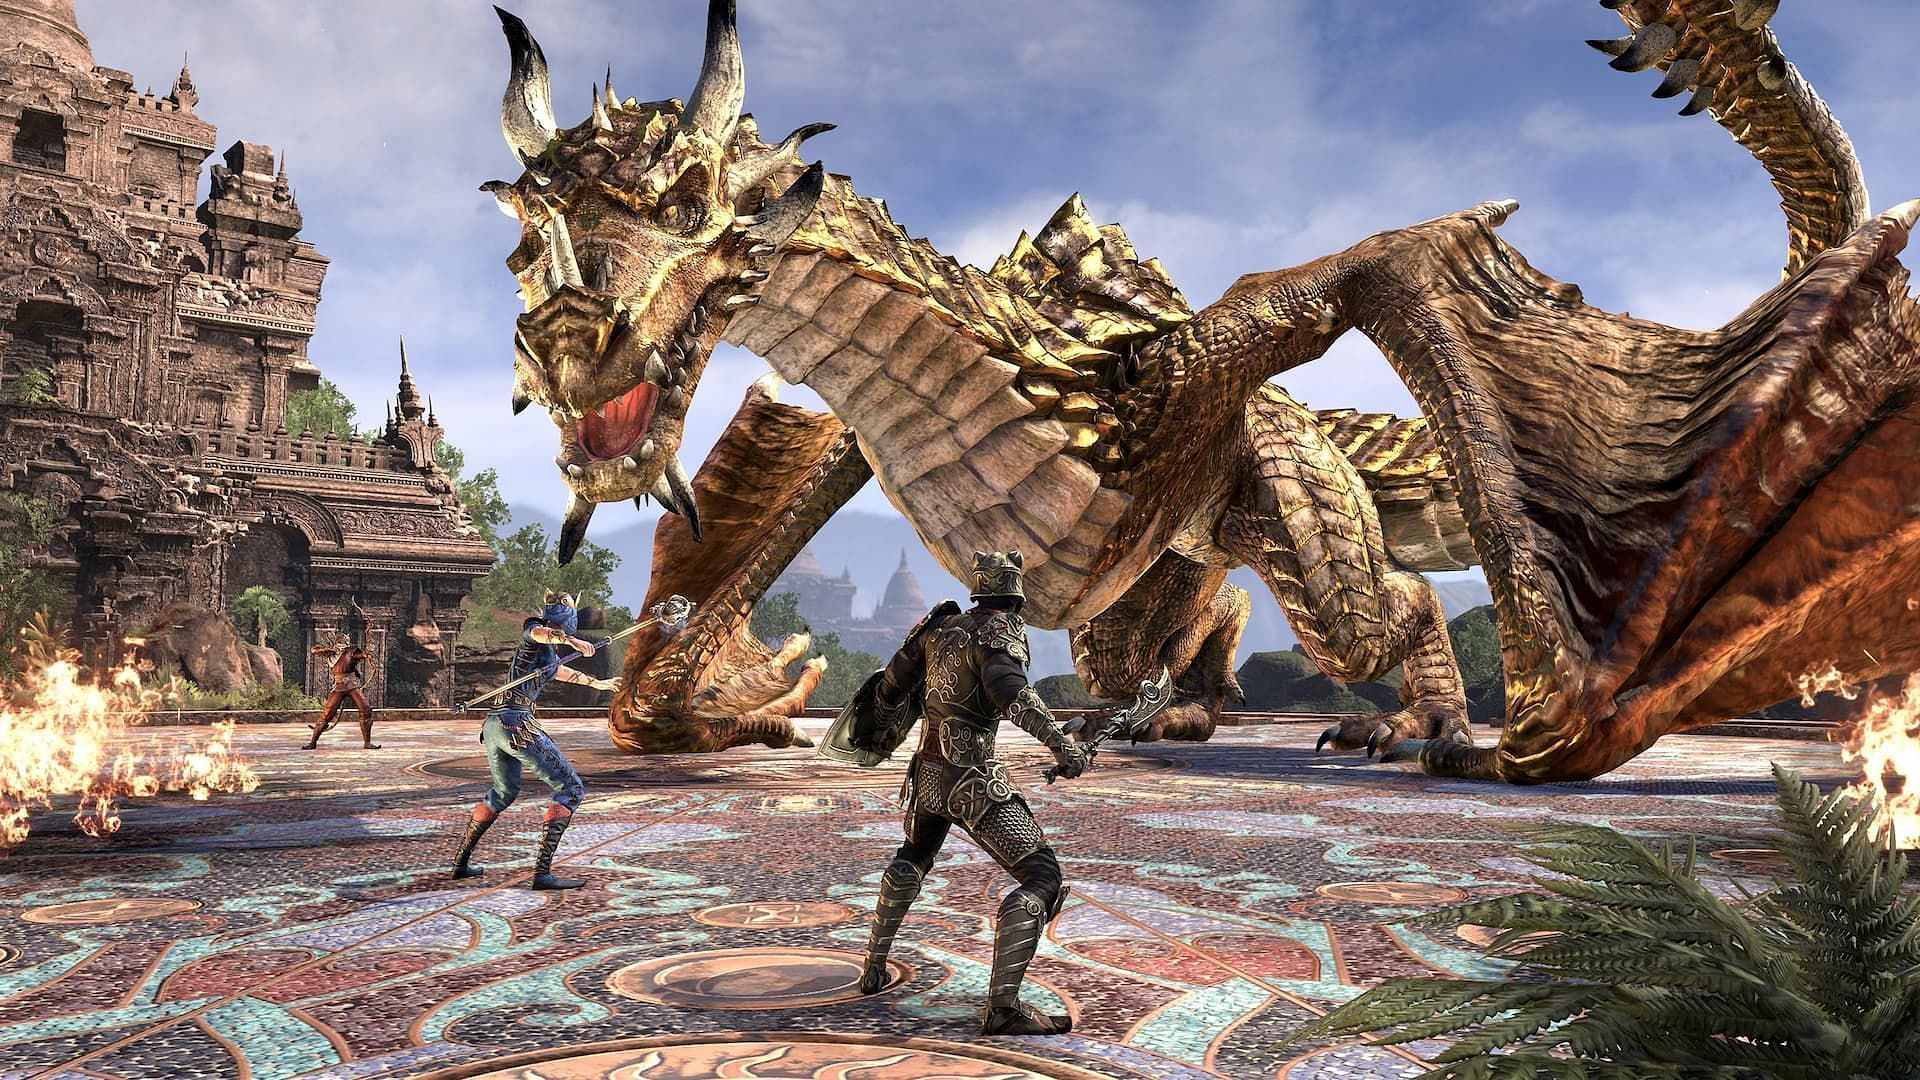 Nahviintaas the Golden Dragon in Elder Scrolls Online. (Image via ZeniMax Online Studios)